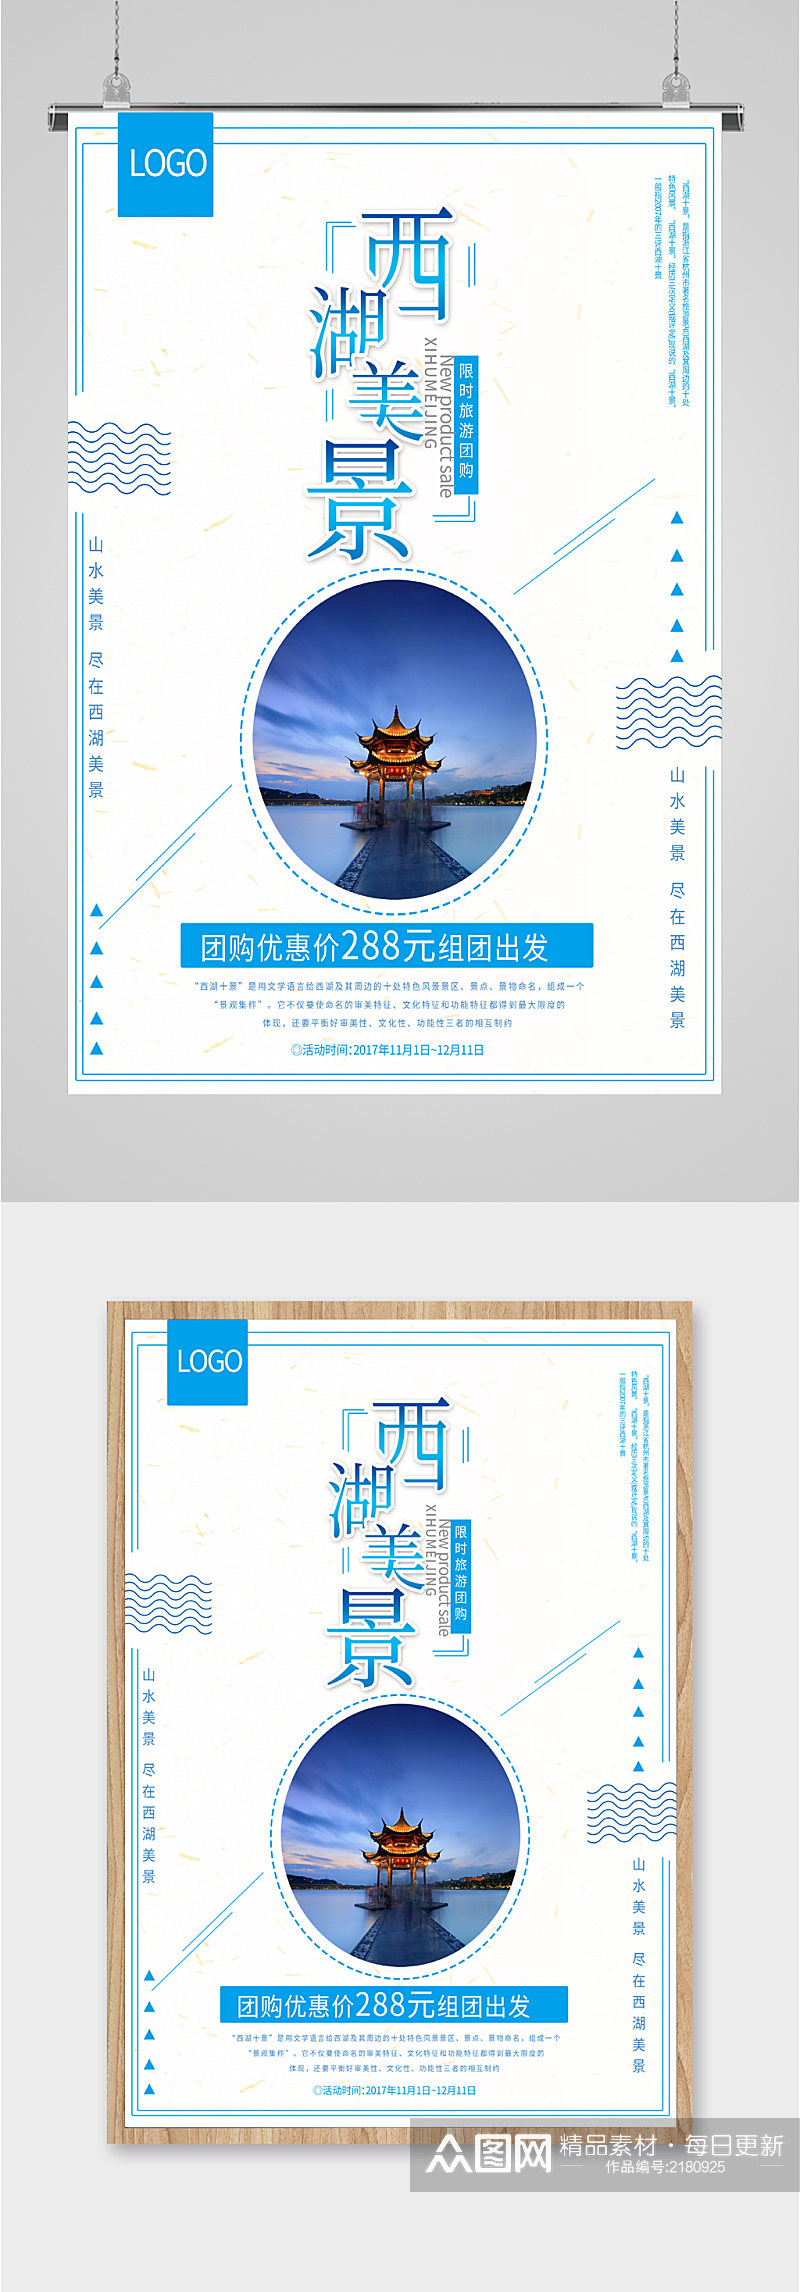 西湖美景团购特惠旅游海报素材